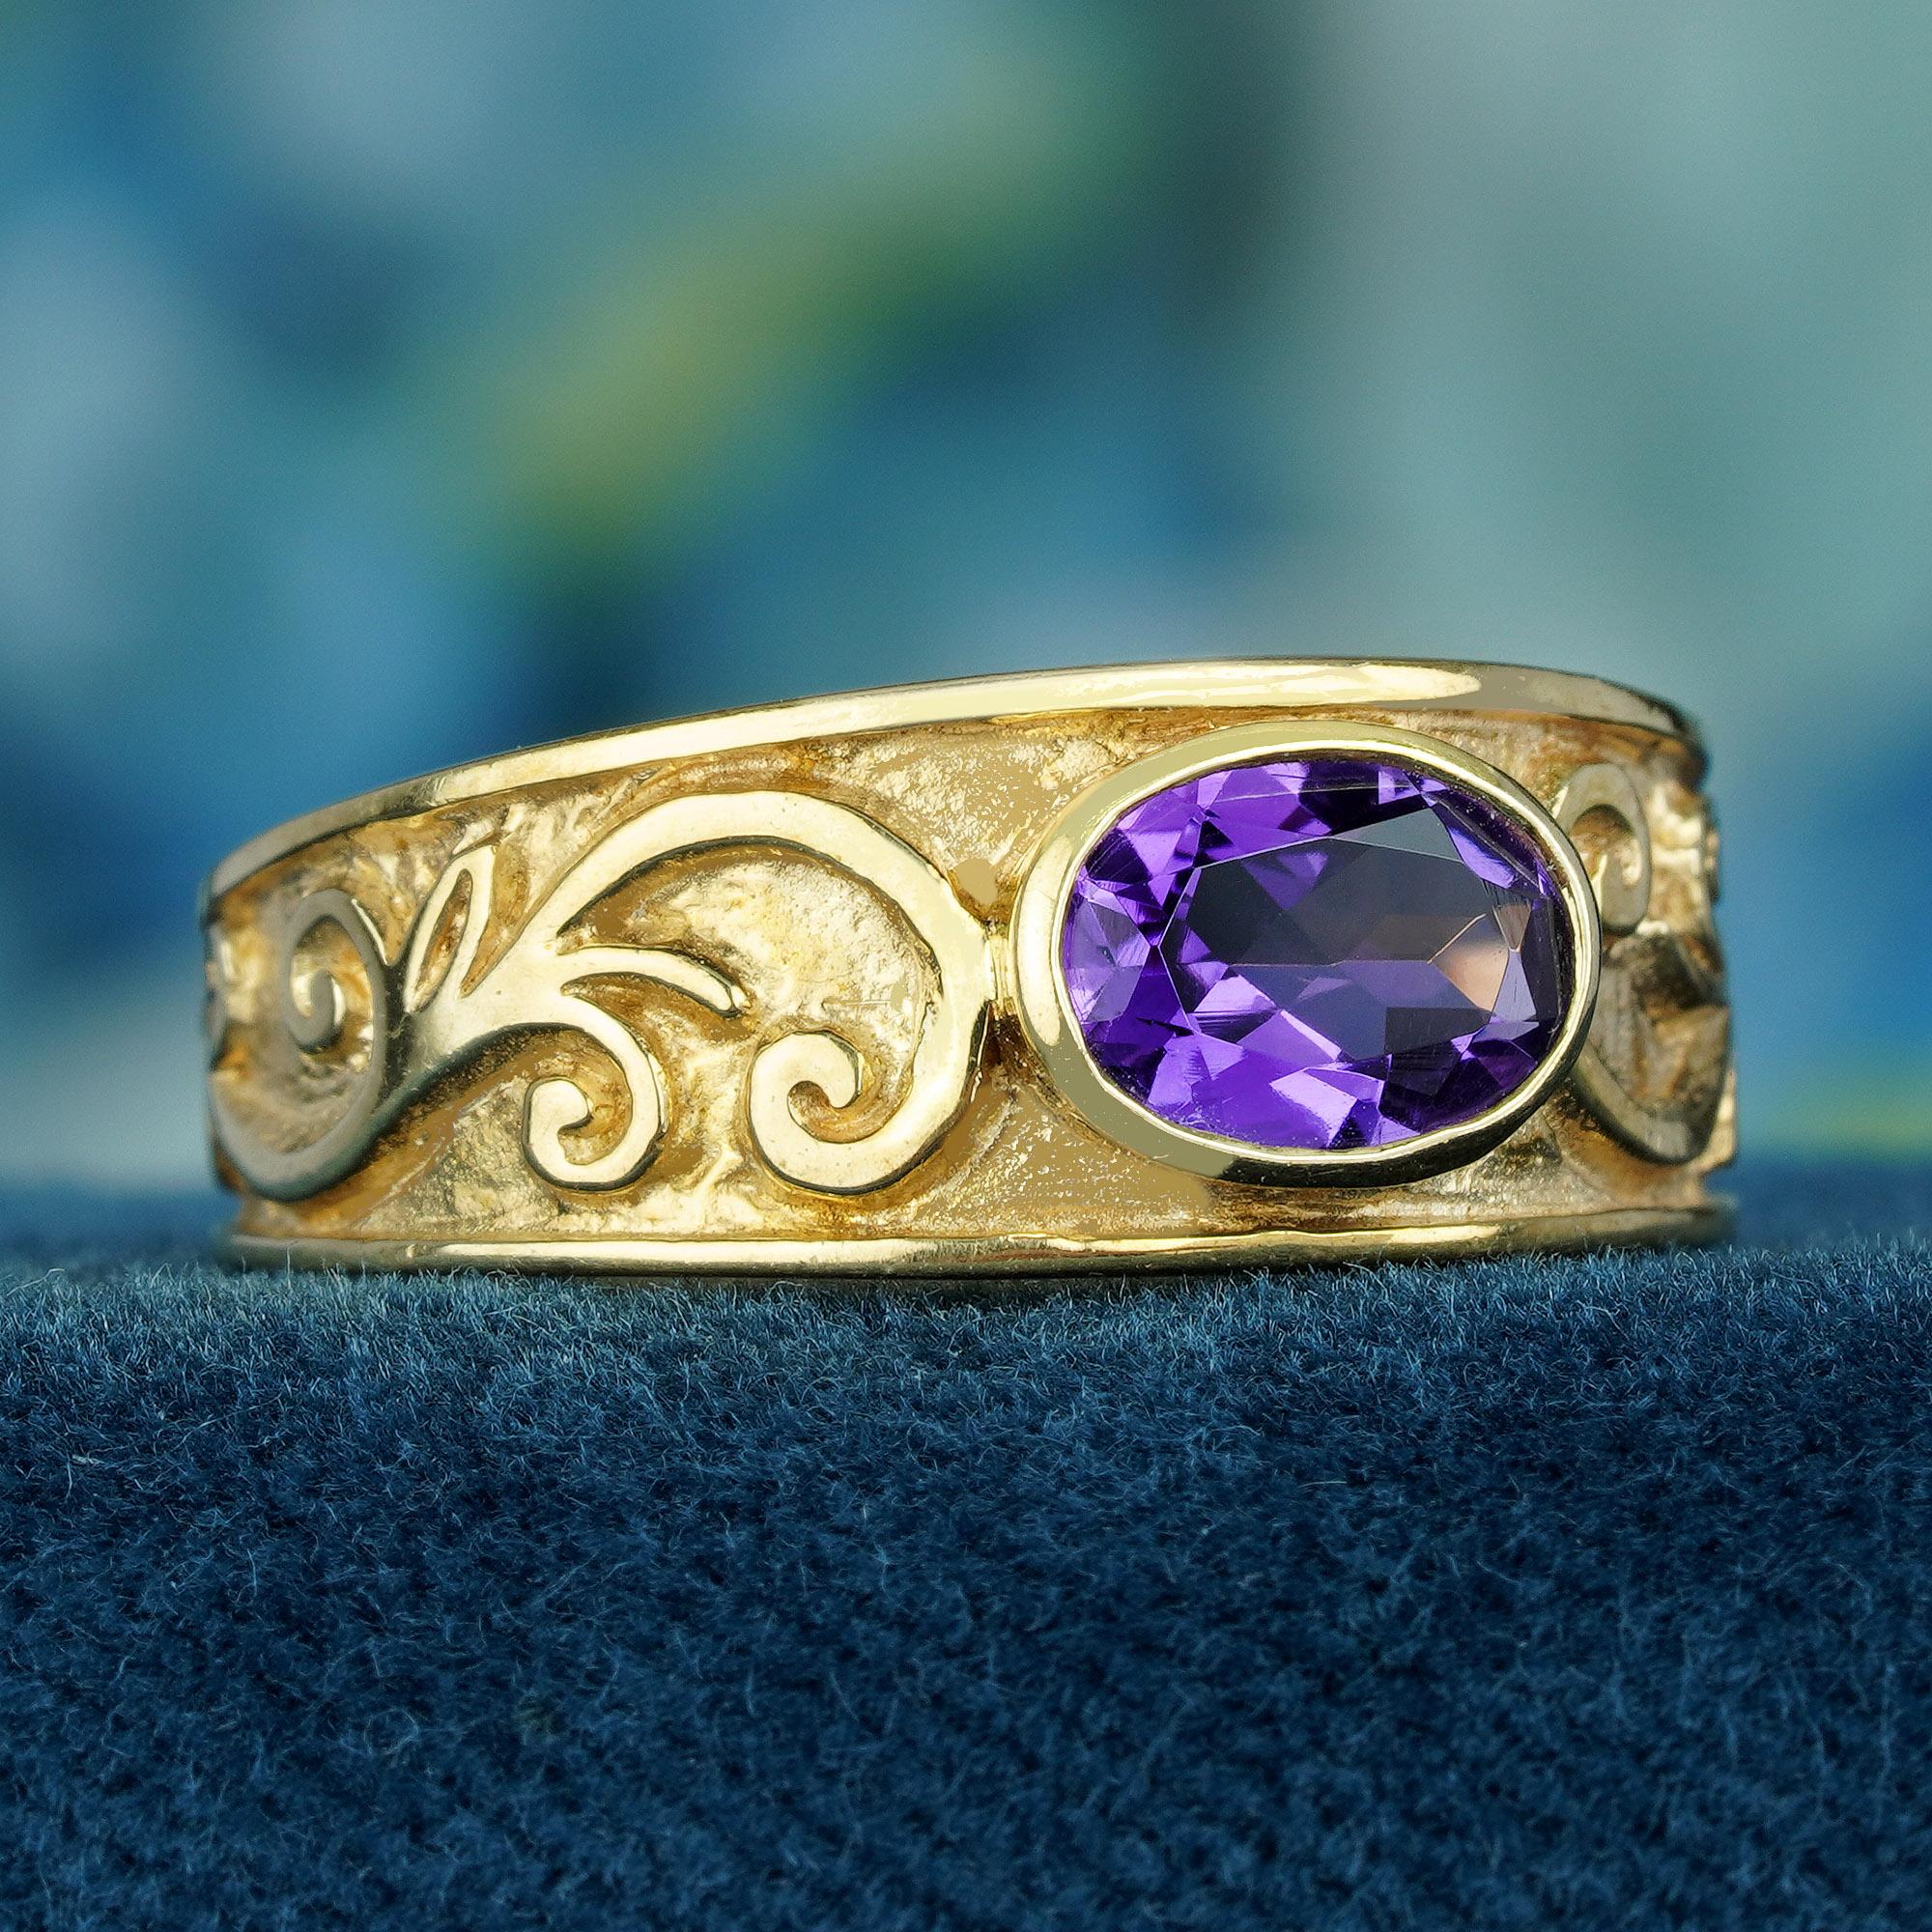 Der Ring hebt einen natürlichen, ovalen Amethysten hervor, der einen lebhaften violetten Farbton aufweist. Er ist in ein massives Gelbgoldband eingefasst, das mit einem kunstvoll geschnitzten Schnörkelmuster versehen ist, das seine antike Ästhetik